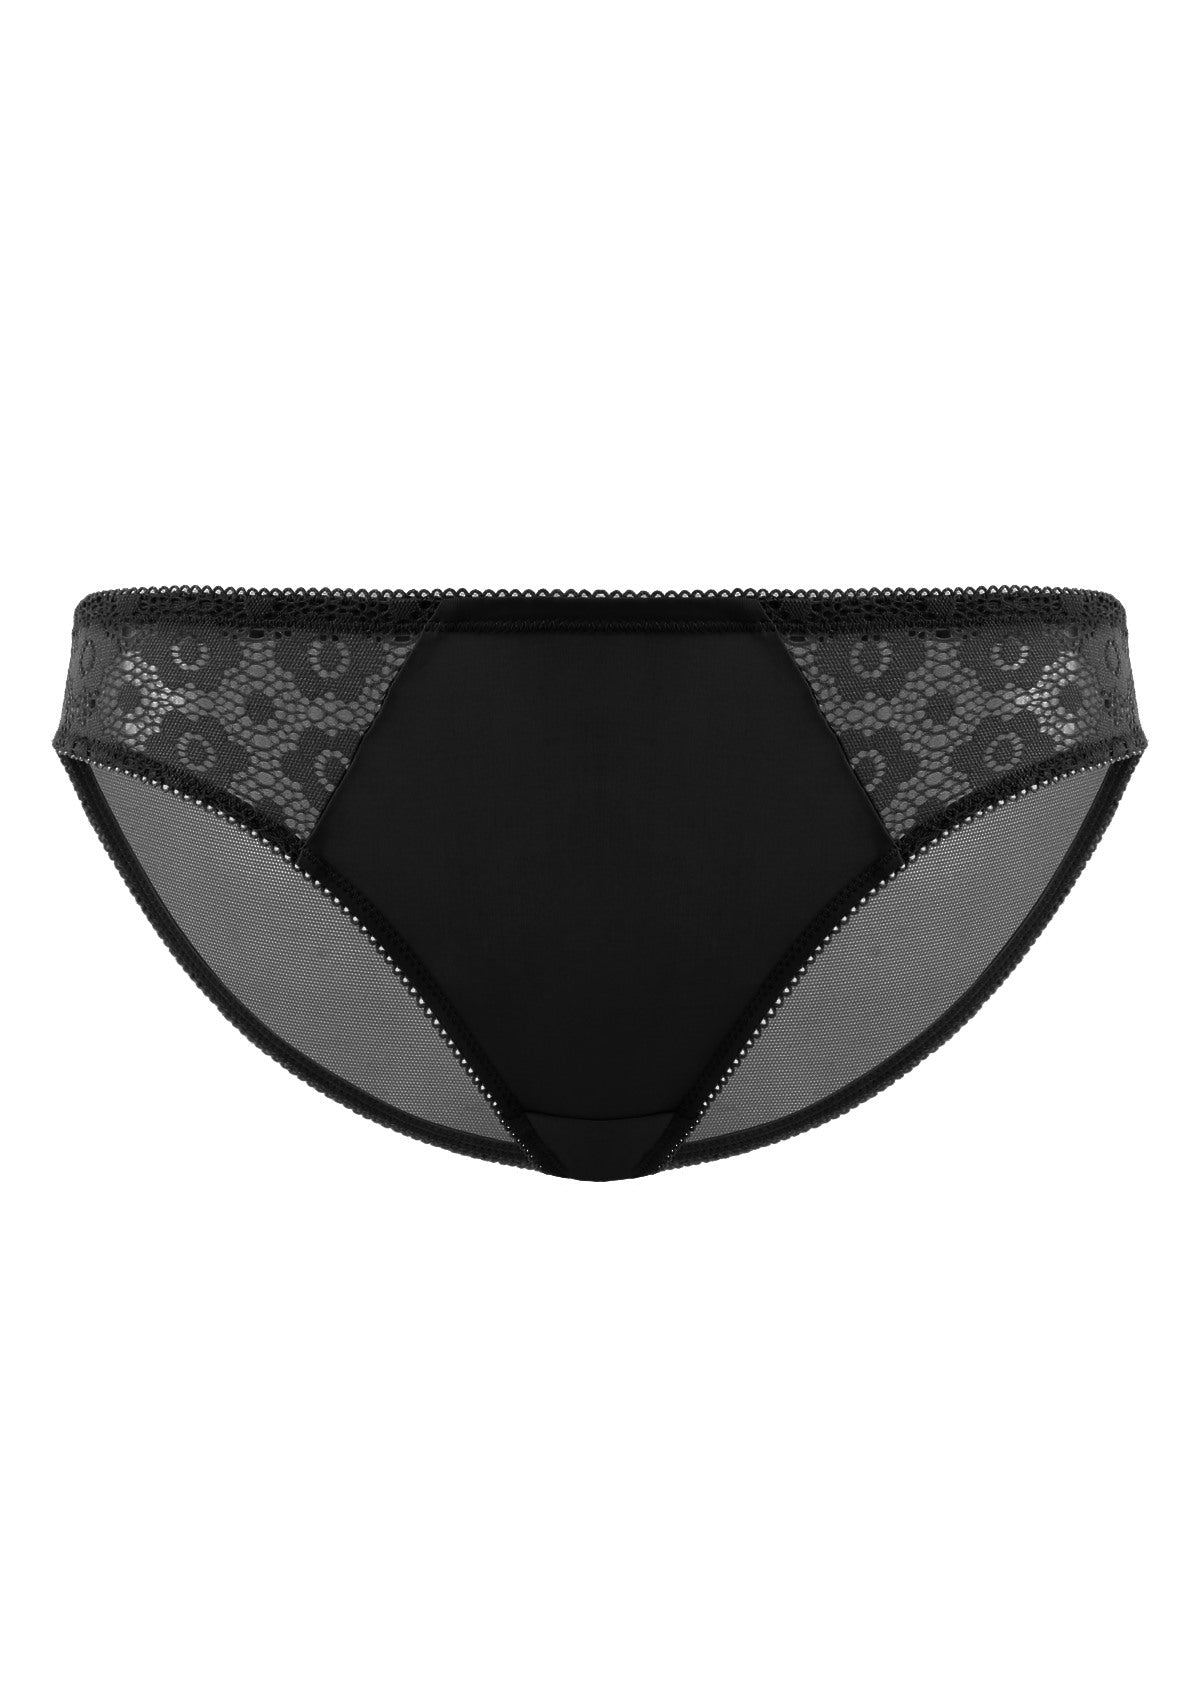 HSIA Serena Comfortable Trendy Lace Trim Bikini Underwear - M / Nude